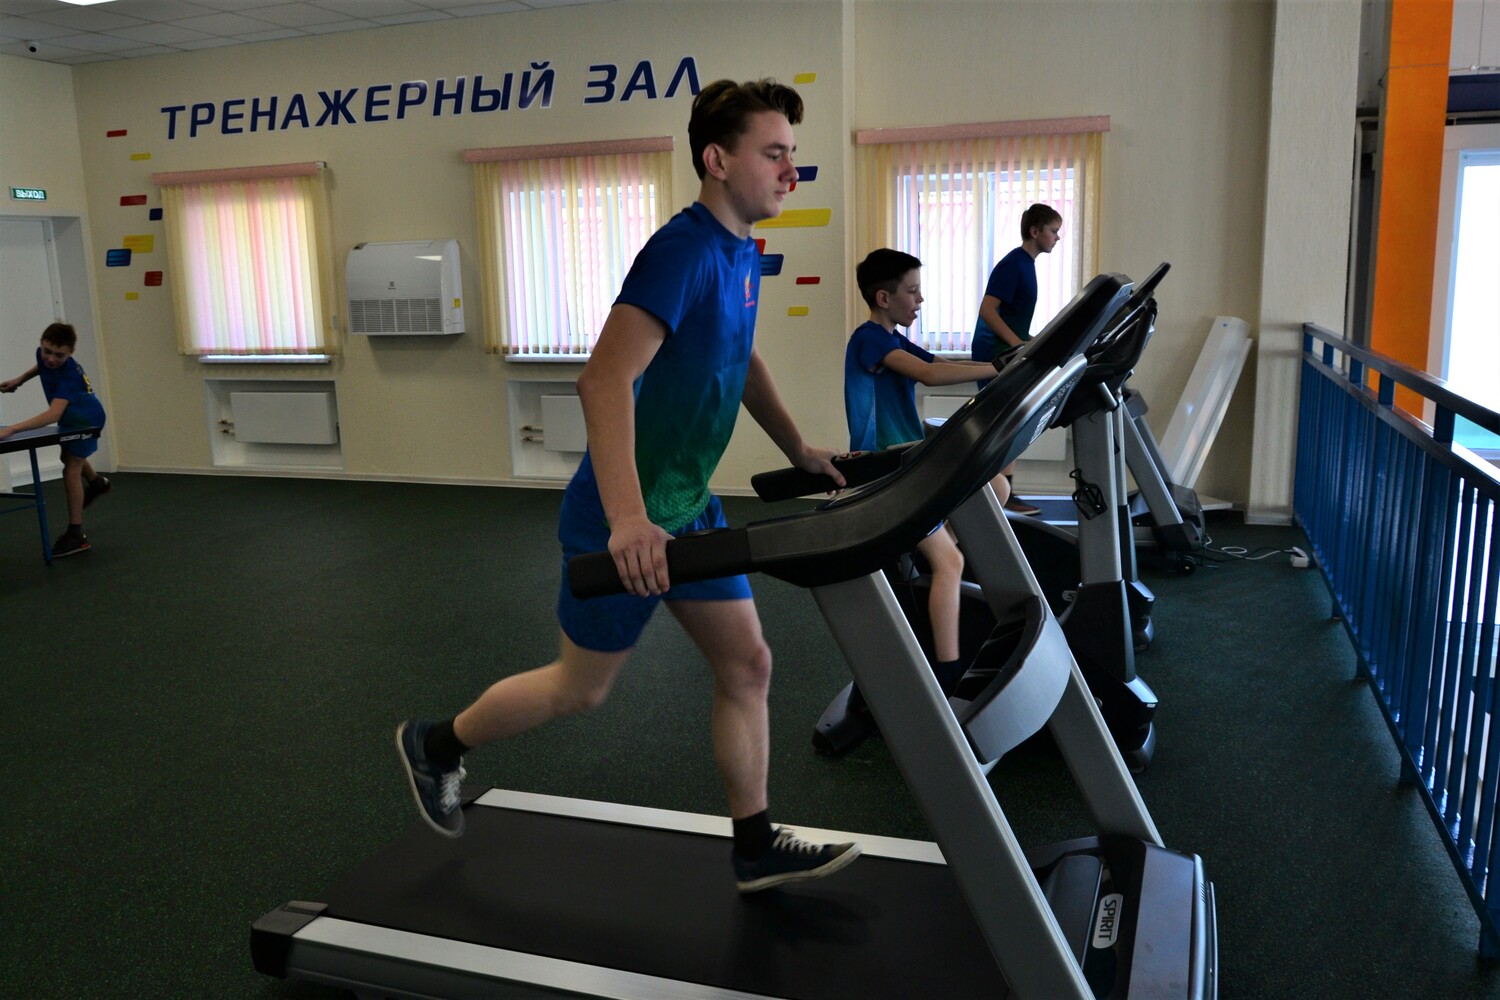 В Прокопьевском районе открылся физкультурно-оздоровительный комплекс при поддержке угольщиков АО Стройсервис. Стройсервис